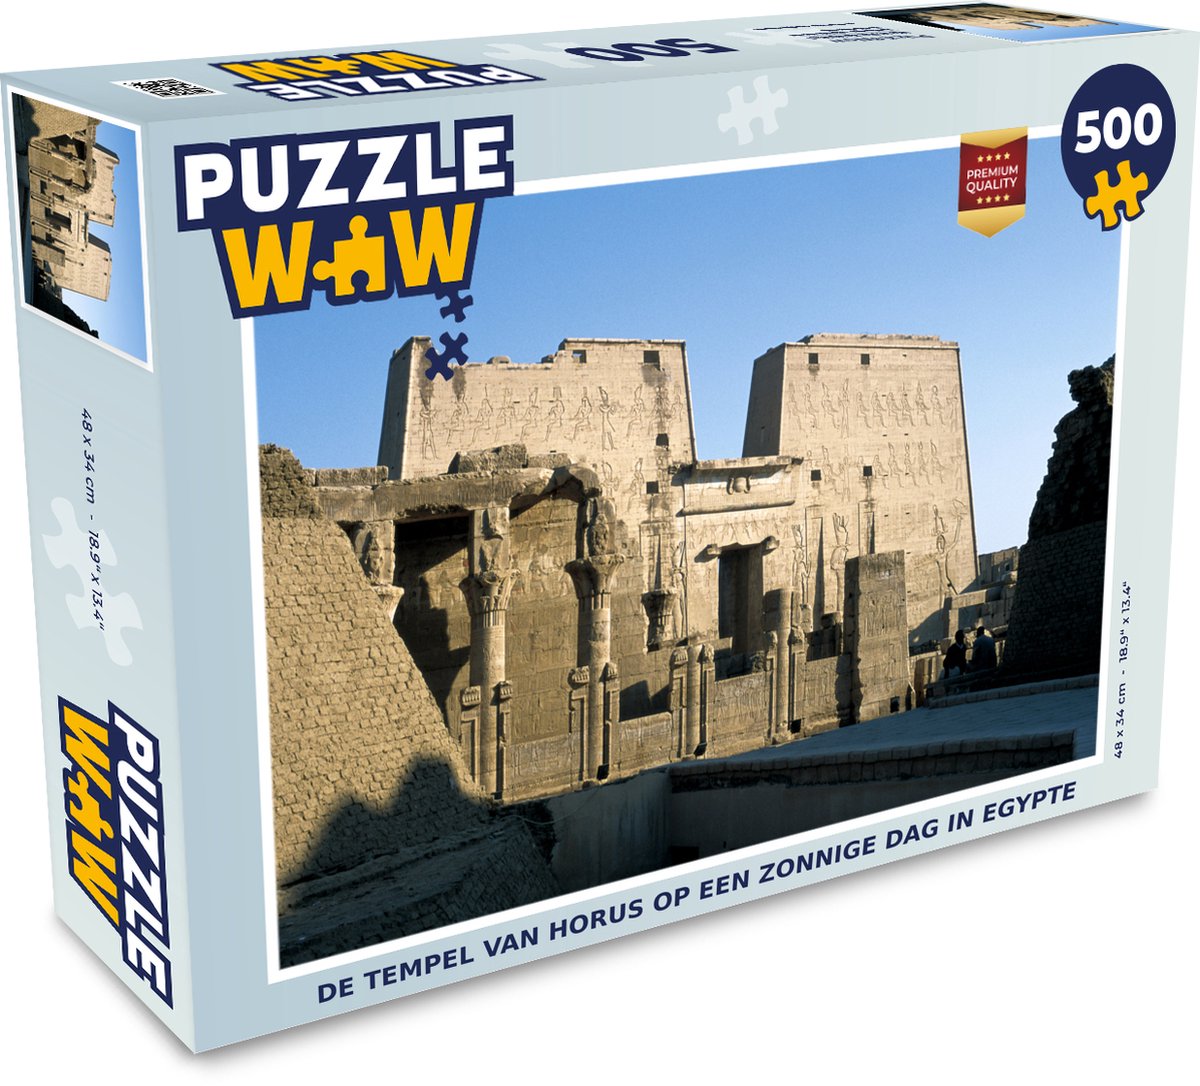 Puzzel De tempel van Horus op een zonnige dag in Egypte - Legpuzzel - Puzzel 500 stukjes - PuzzleWow